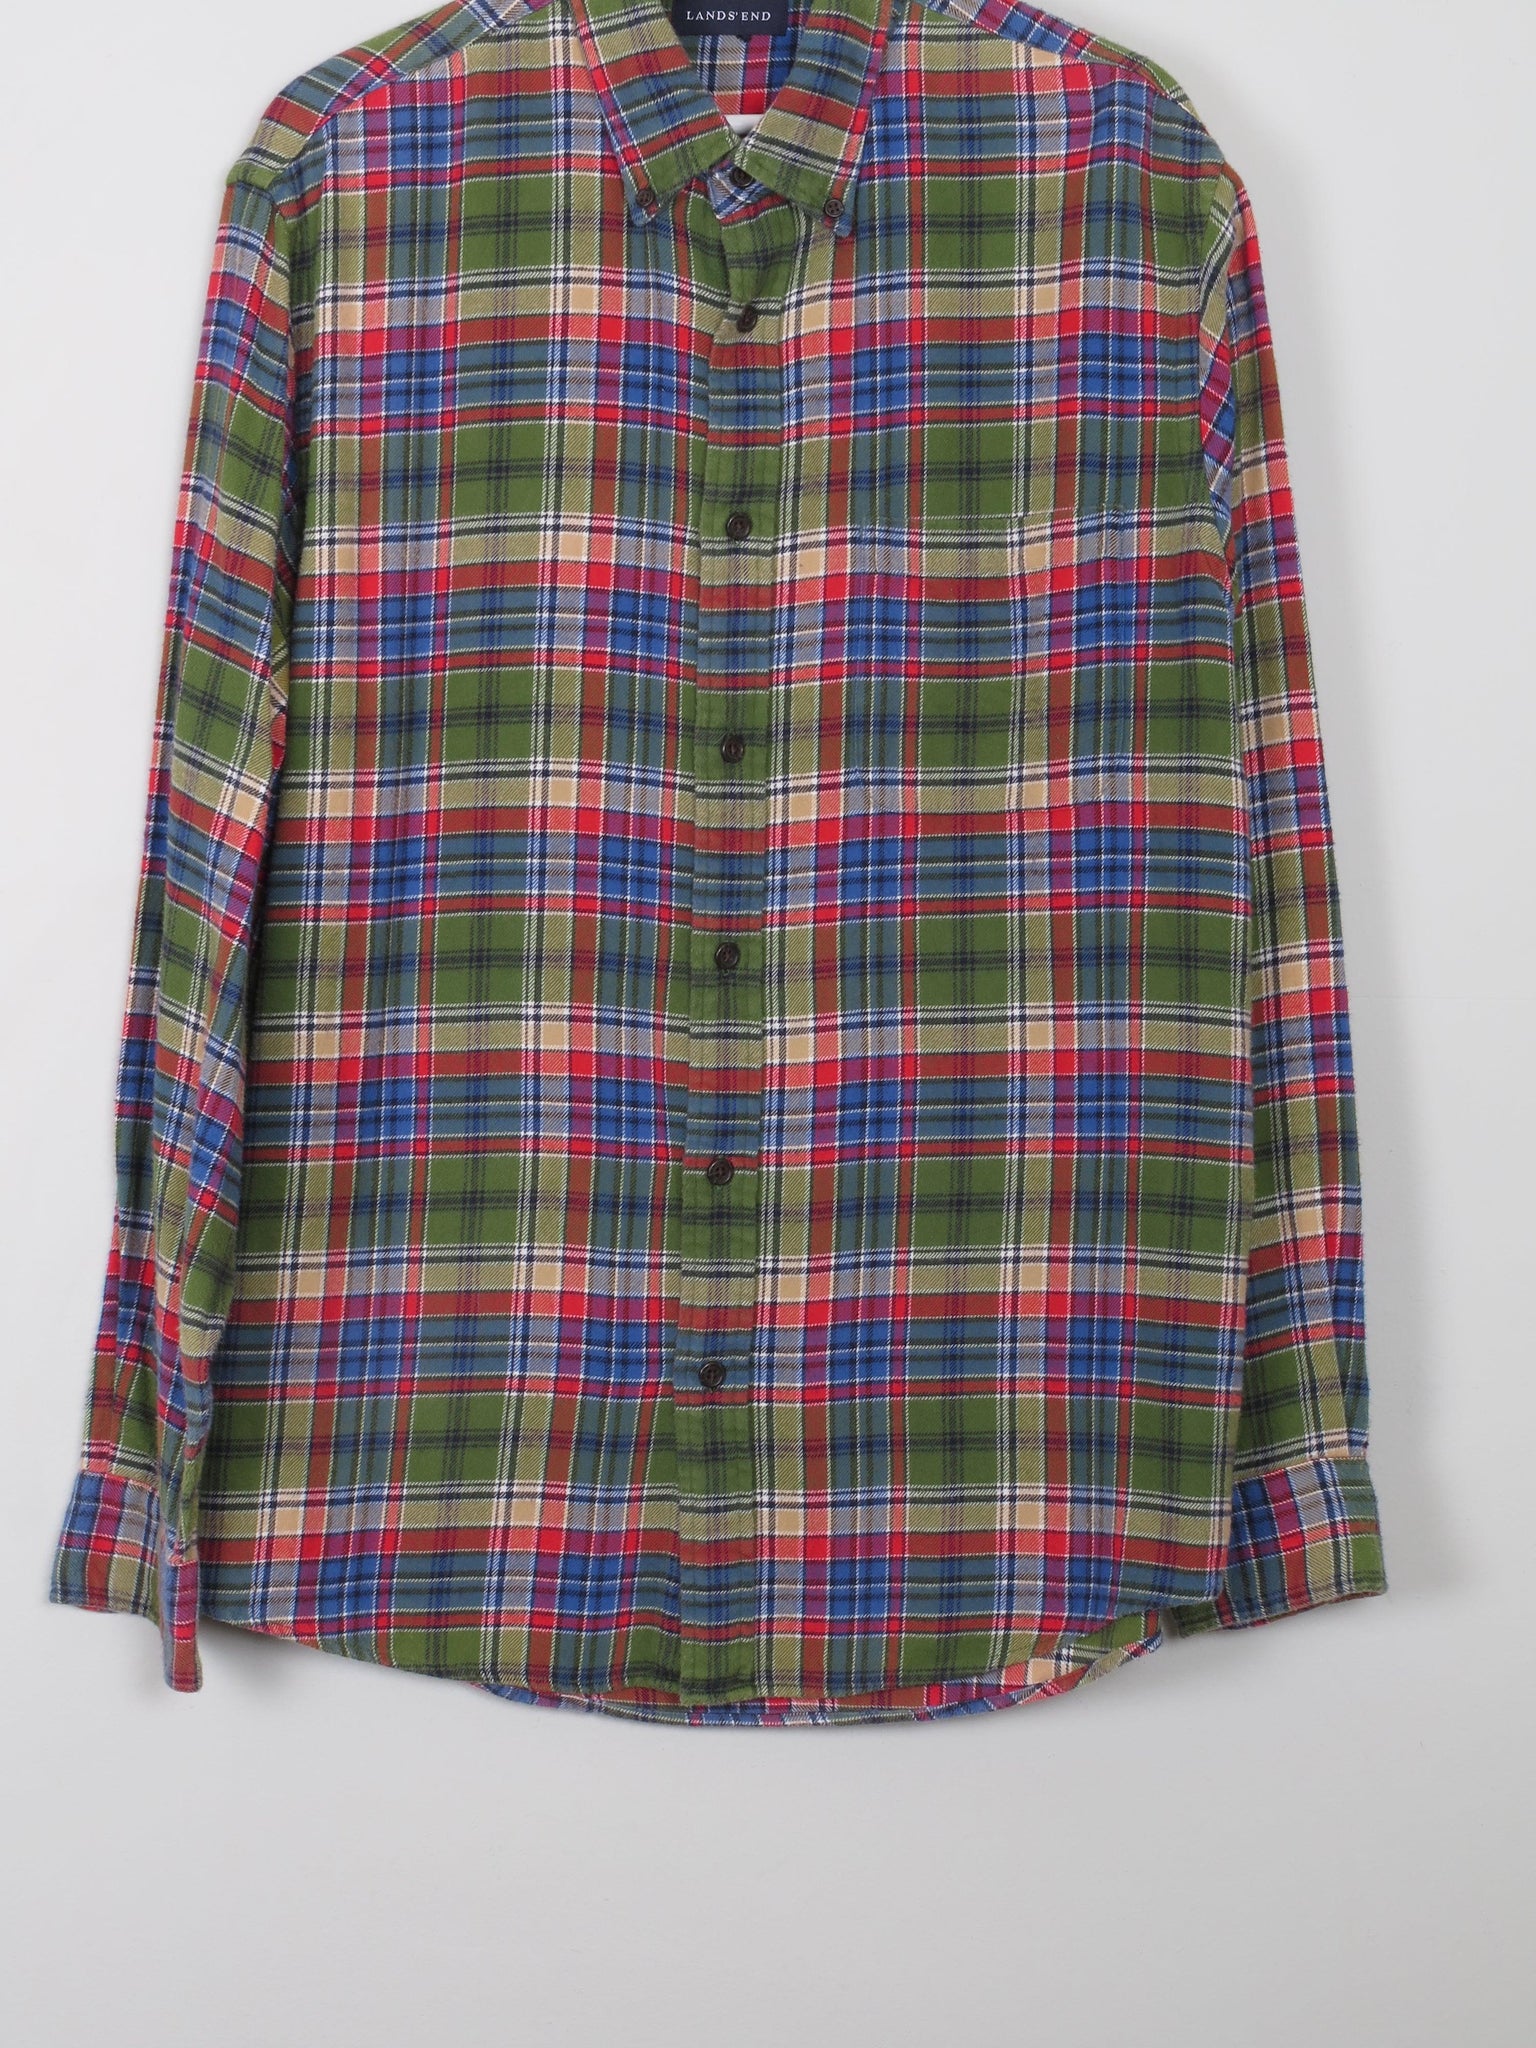 Men's Lands End Vintage Flannel Shirt L Relaxed Fit - The Harlequin